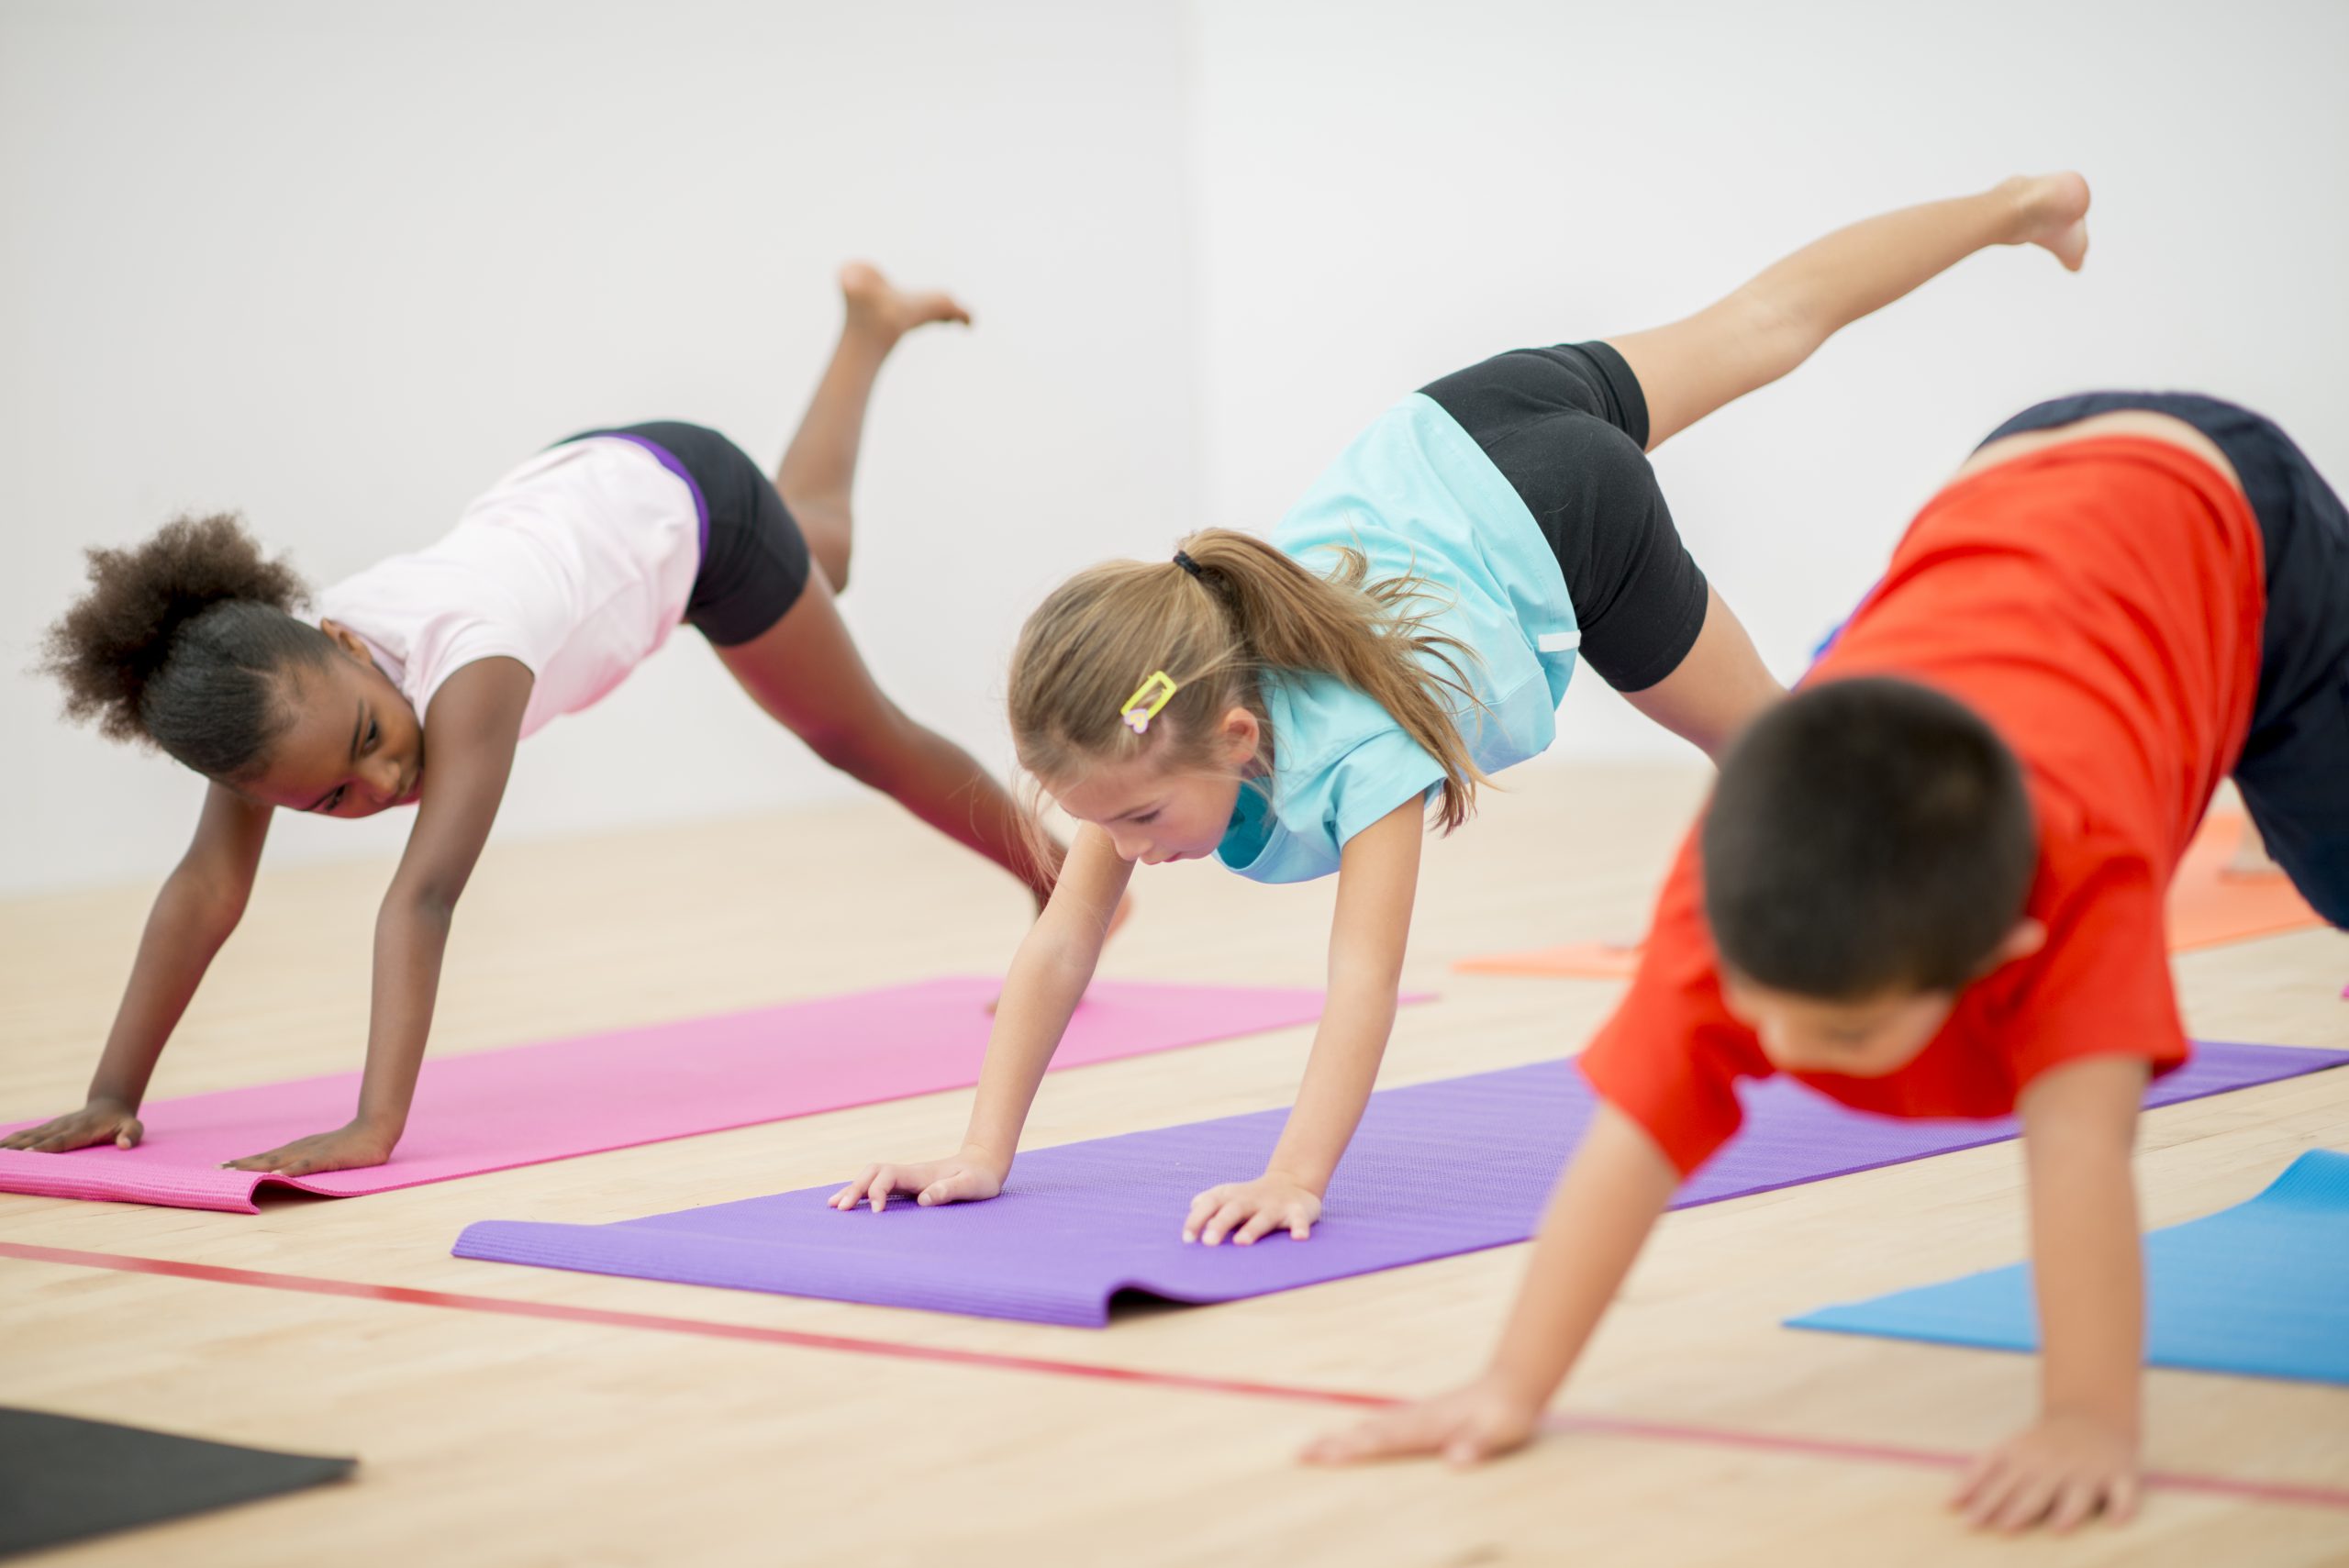 Координация осанки. Гимнастические упражнения для детей. Йога для детей. Занятие по йоге для детей. Упражнения для йоги для детей.